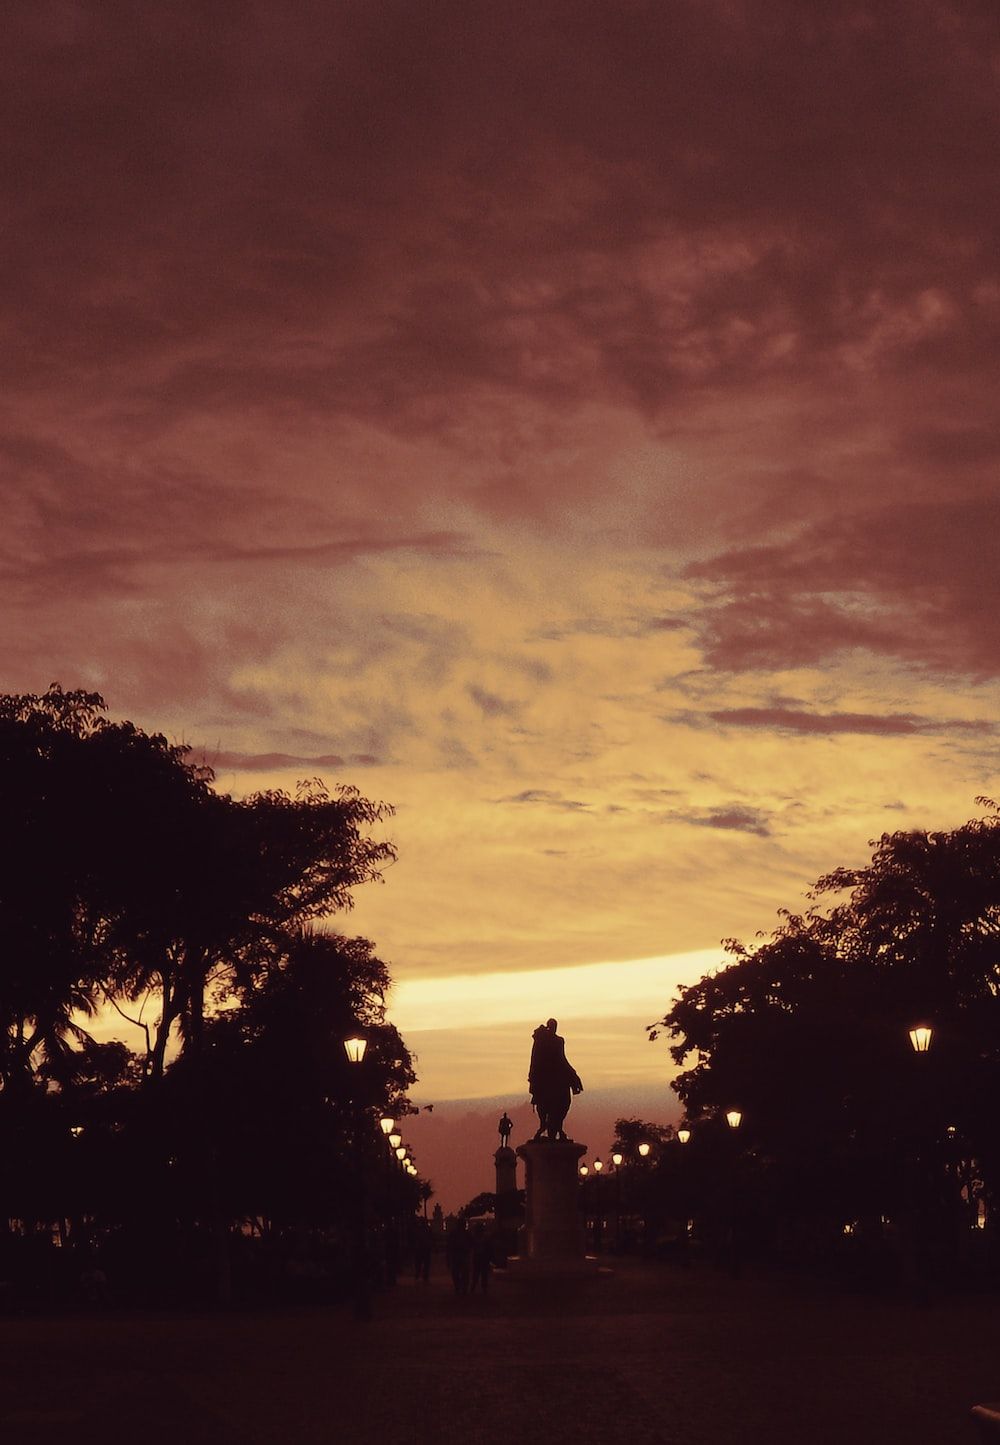  Landschaft Hintergrundbild 1000x1445. Foto zum Thema Silhouette von 2 Personen, die während des Sonnenuntergangs in der Nähe von Bäumen stehen